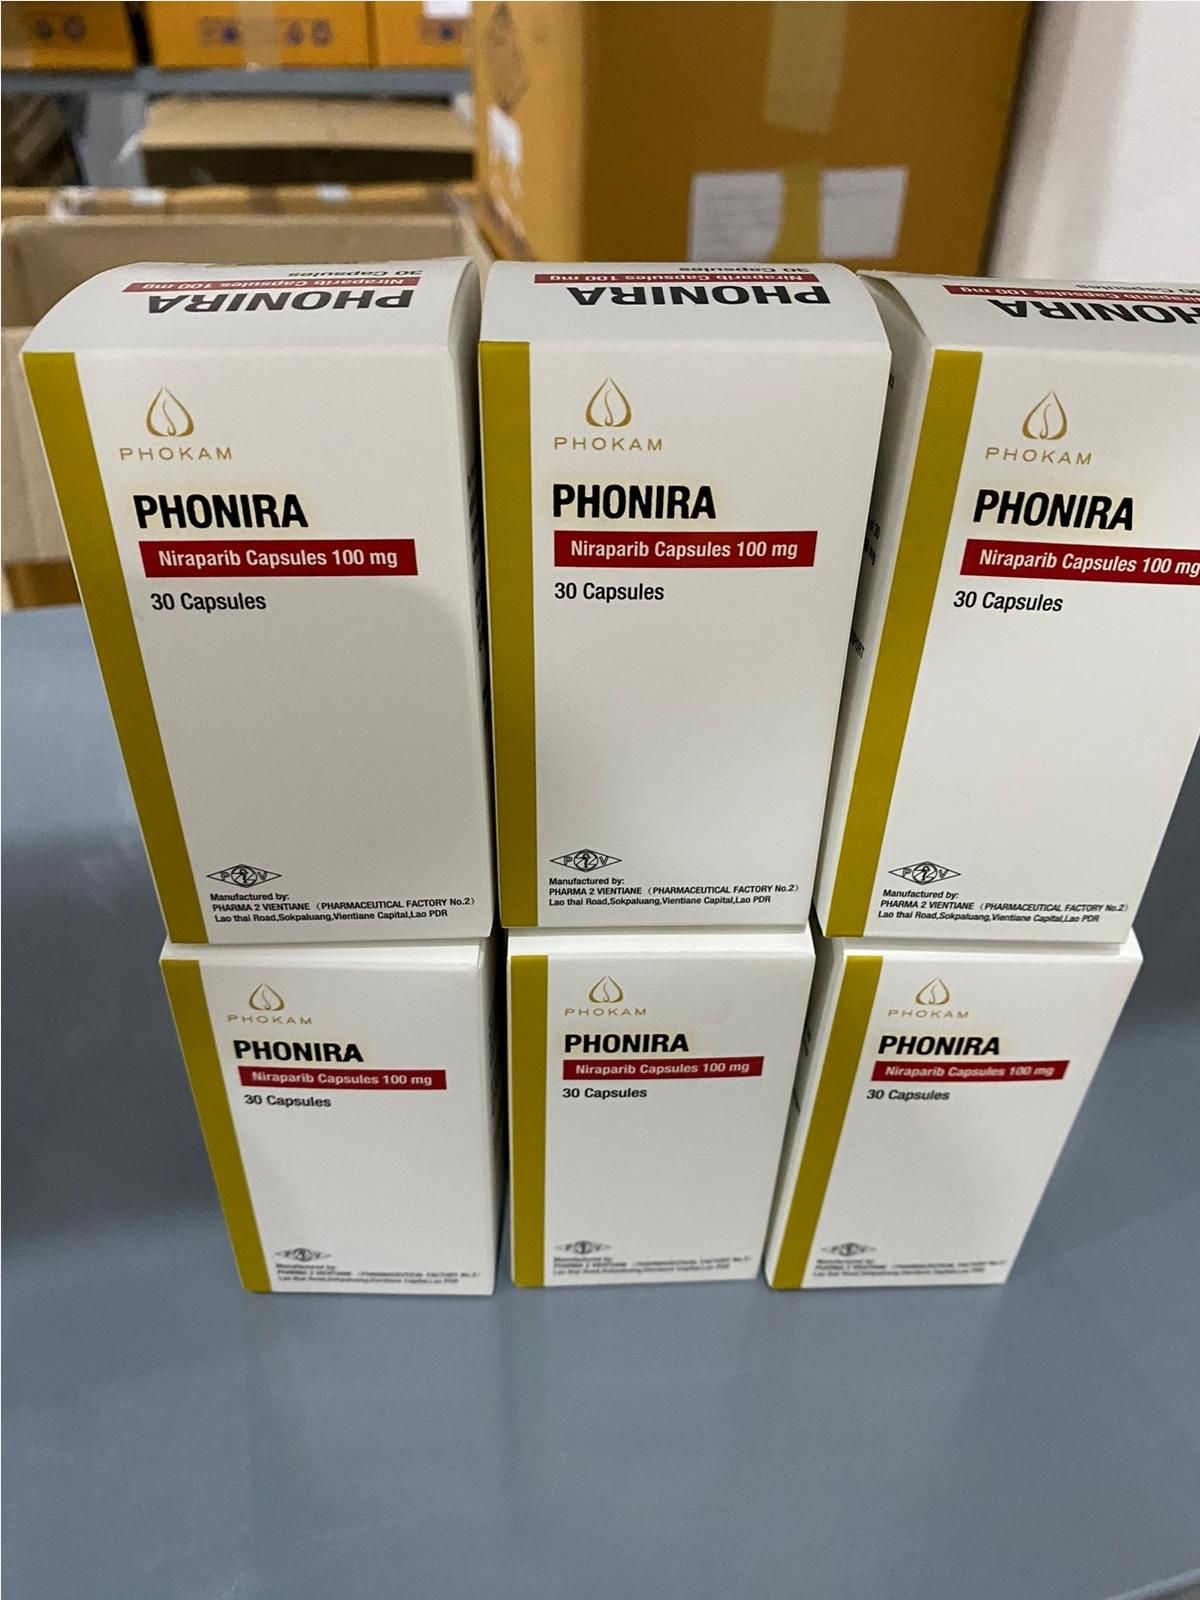 Thuốc Phonira Niraparib 100mg giá bao nhiêu mua ở đâu?